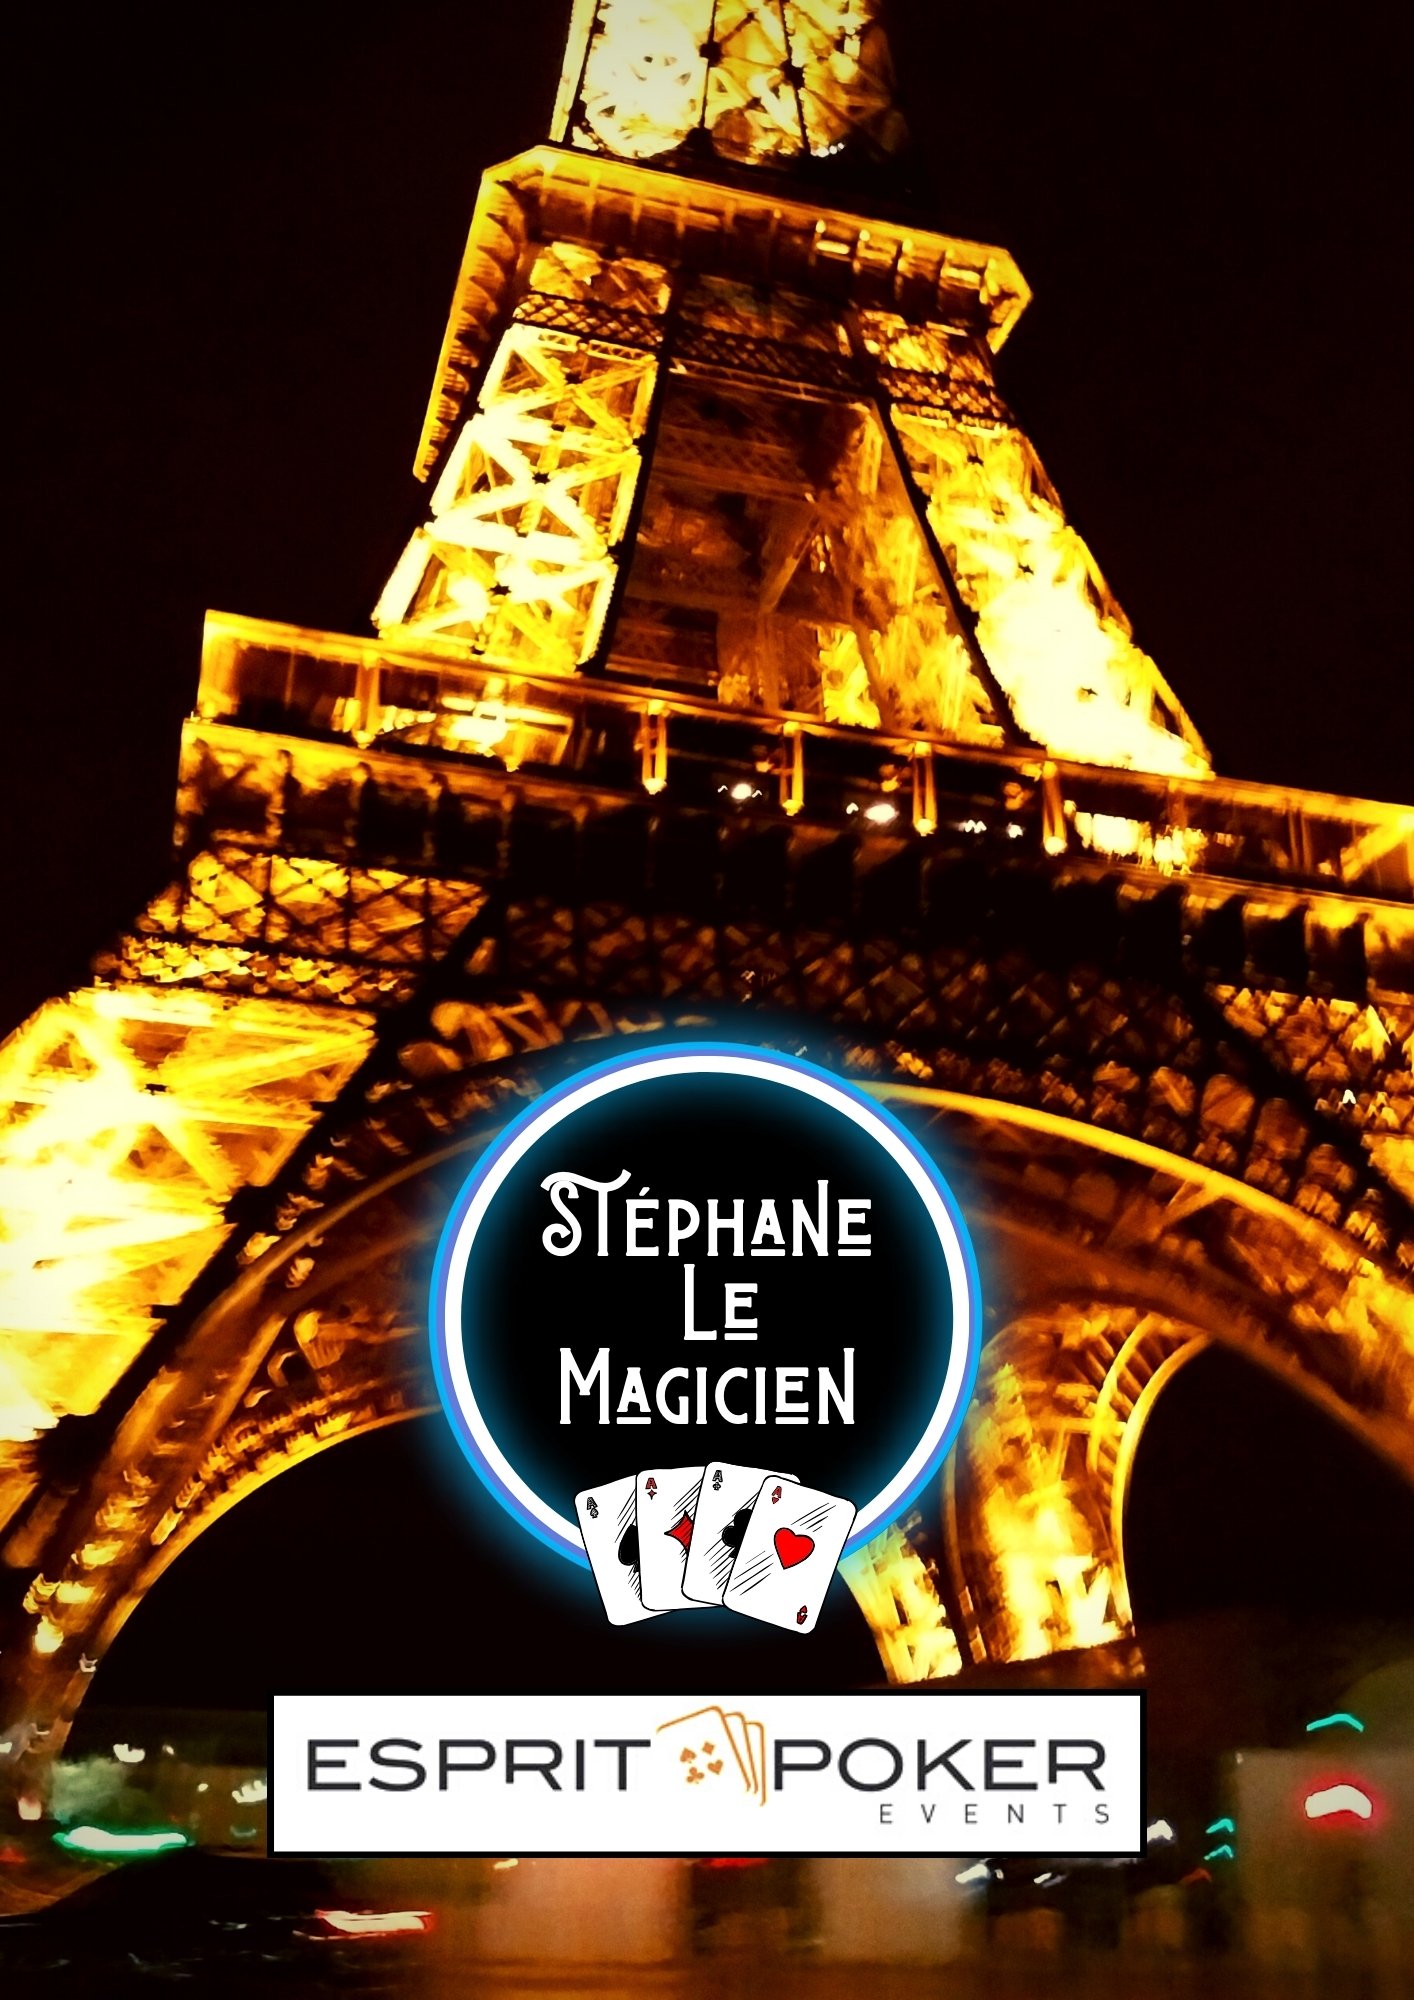 Esprit poker / Stephane Le Magicien